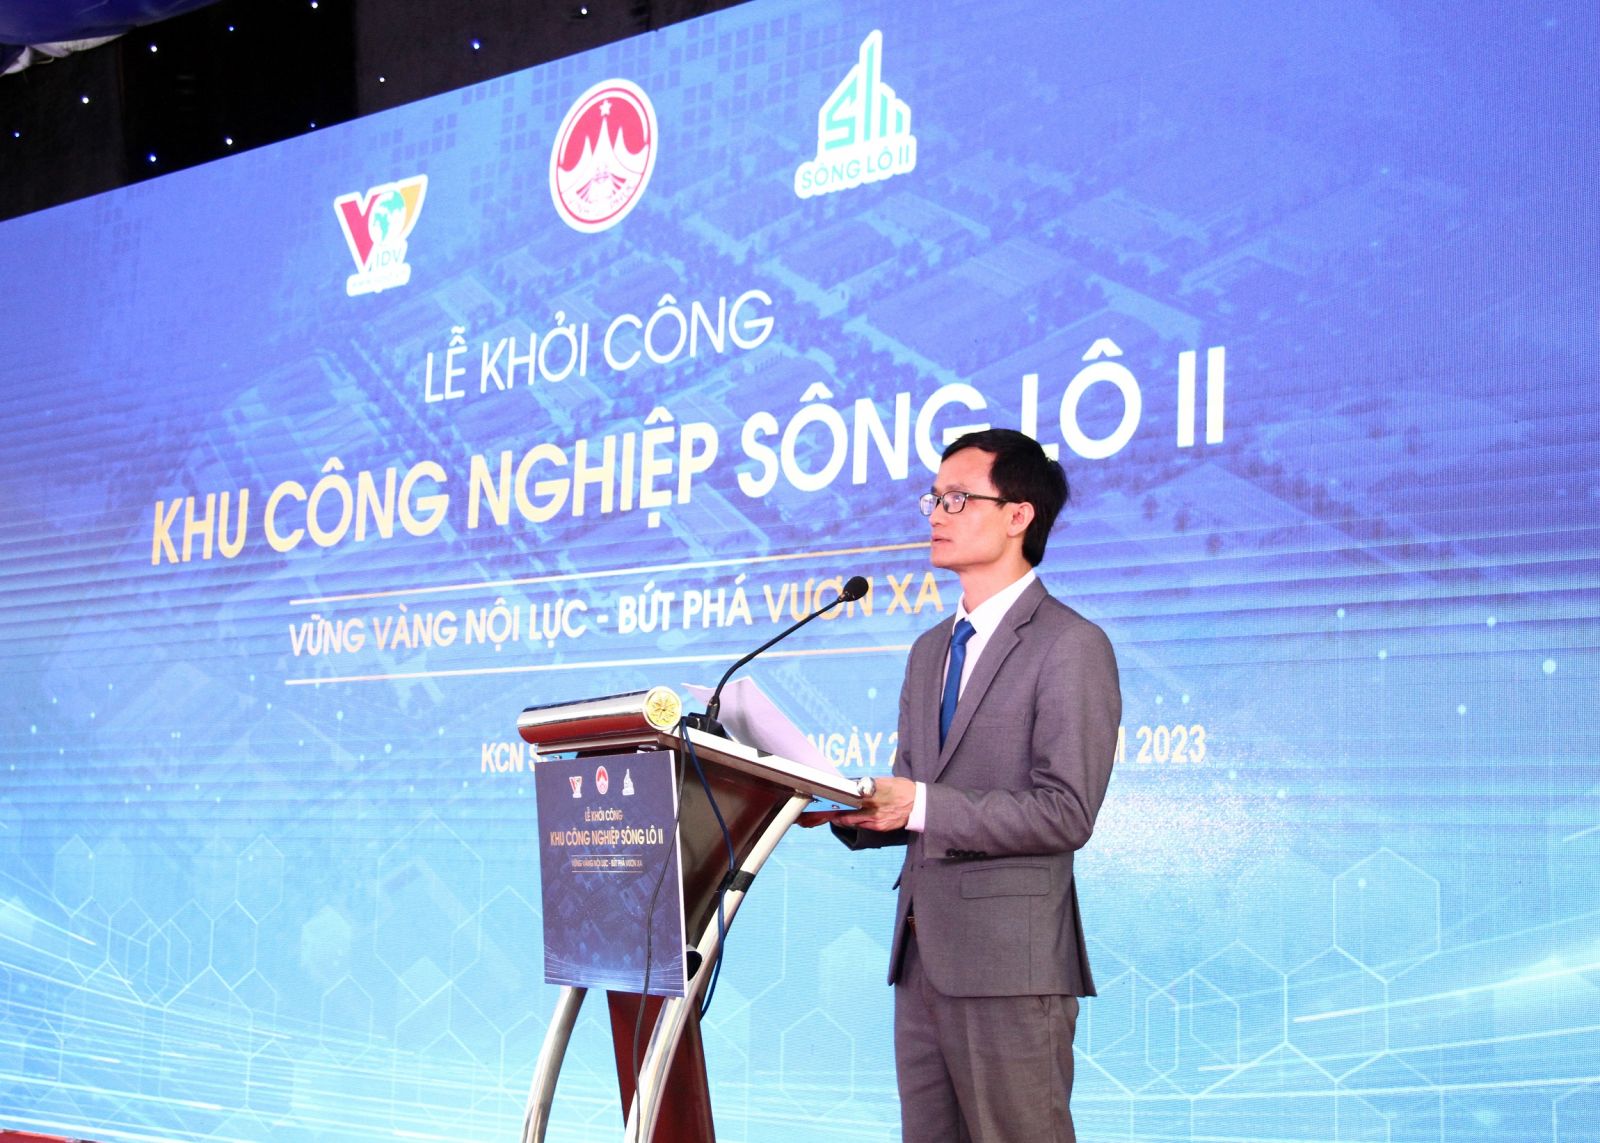 Ông Phạm Trung Kiên, Tổng Giám đốc Công ty cổ phần phát triển hạ tầng Vĩnh Phúc phát biểu khai mạc Lễ khởi công